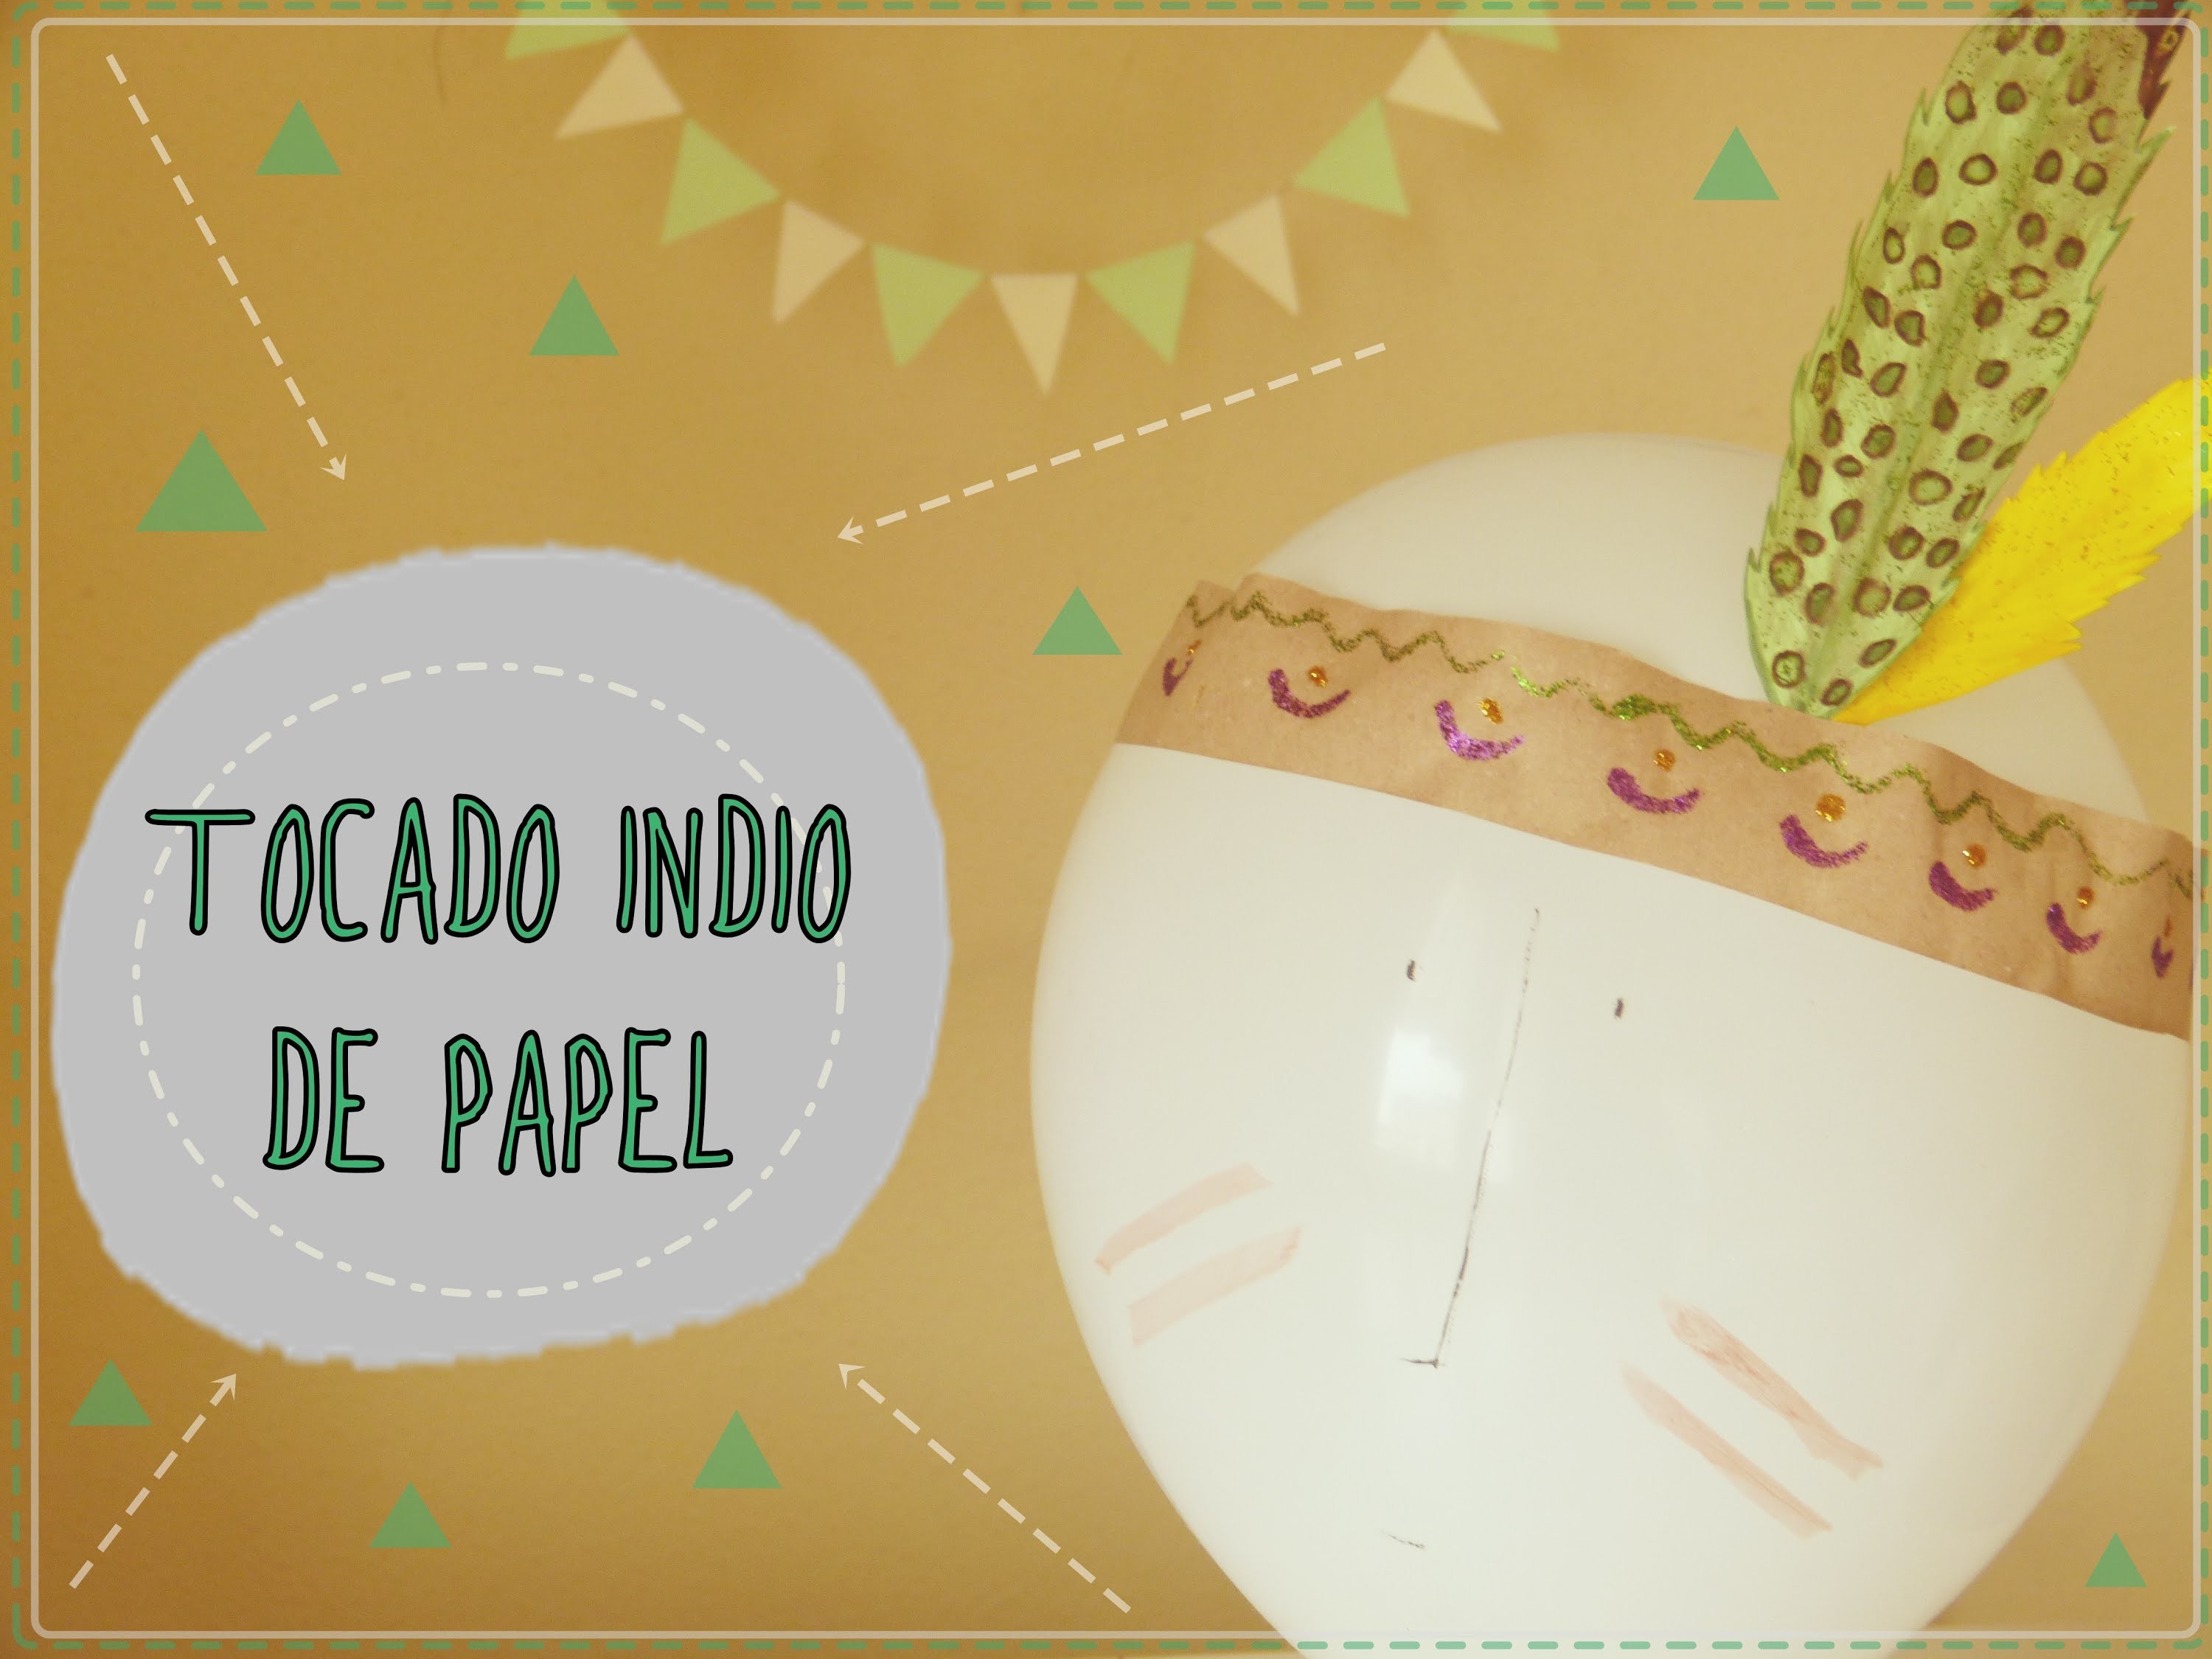 Tocado indio de papel [Disfraz para Carnaval 2015]